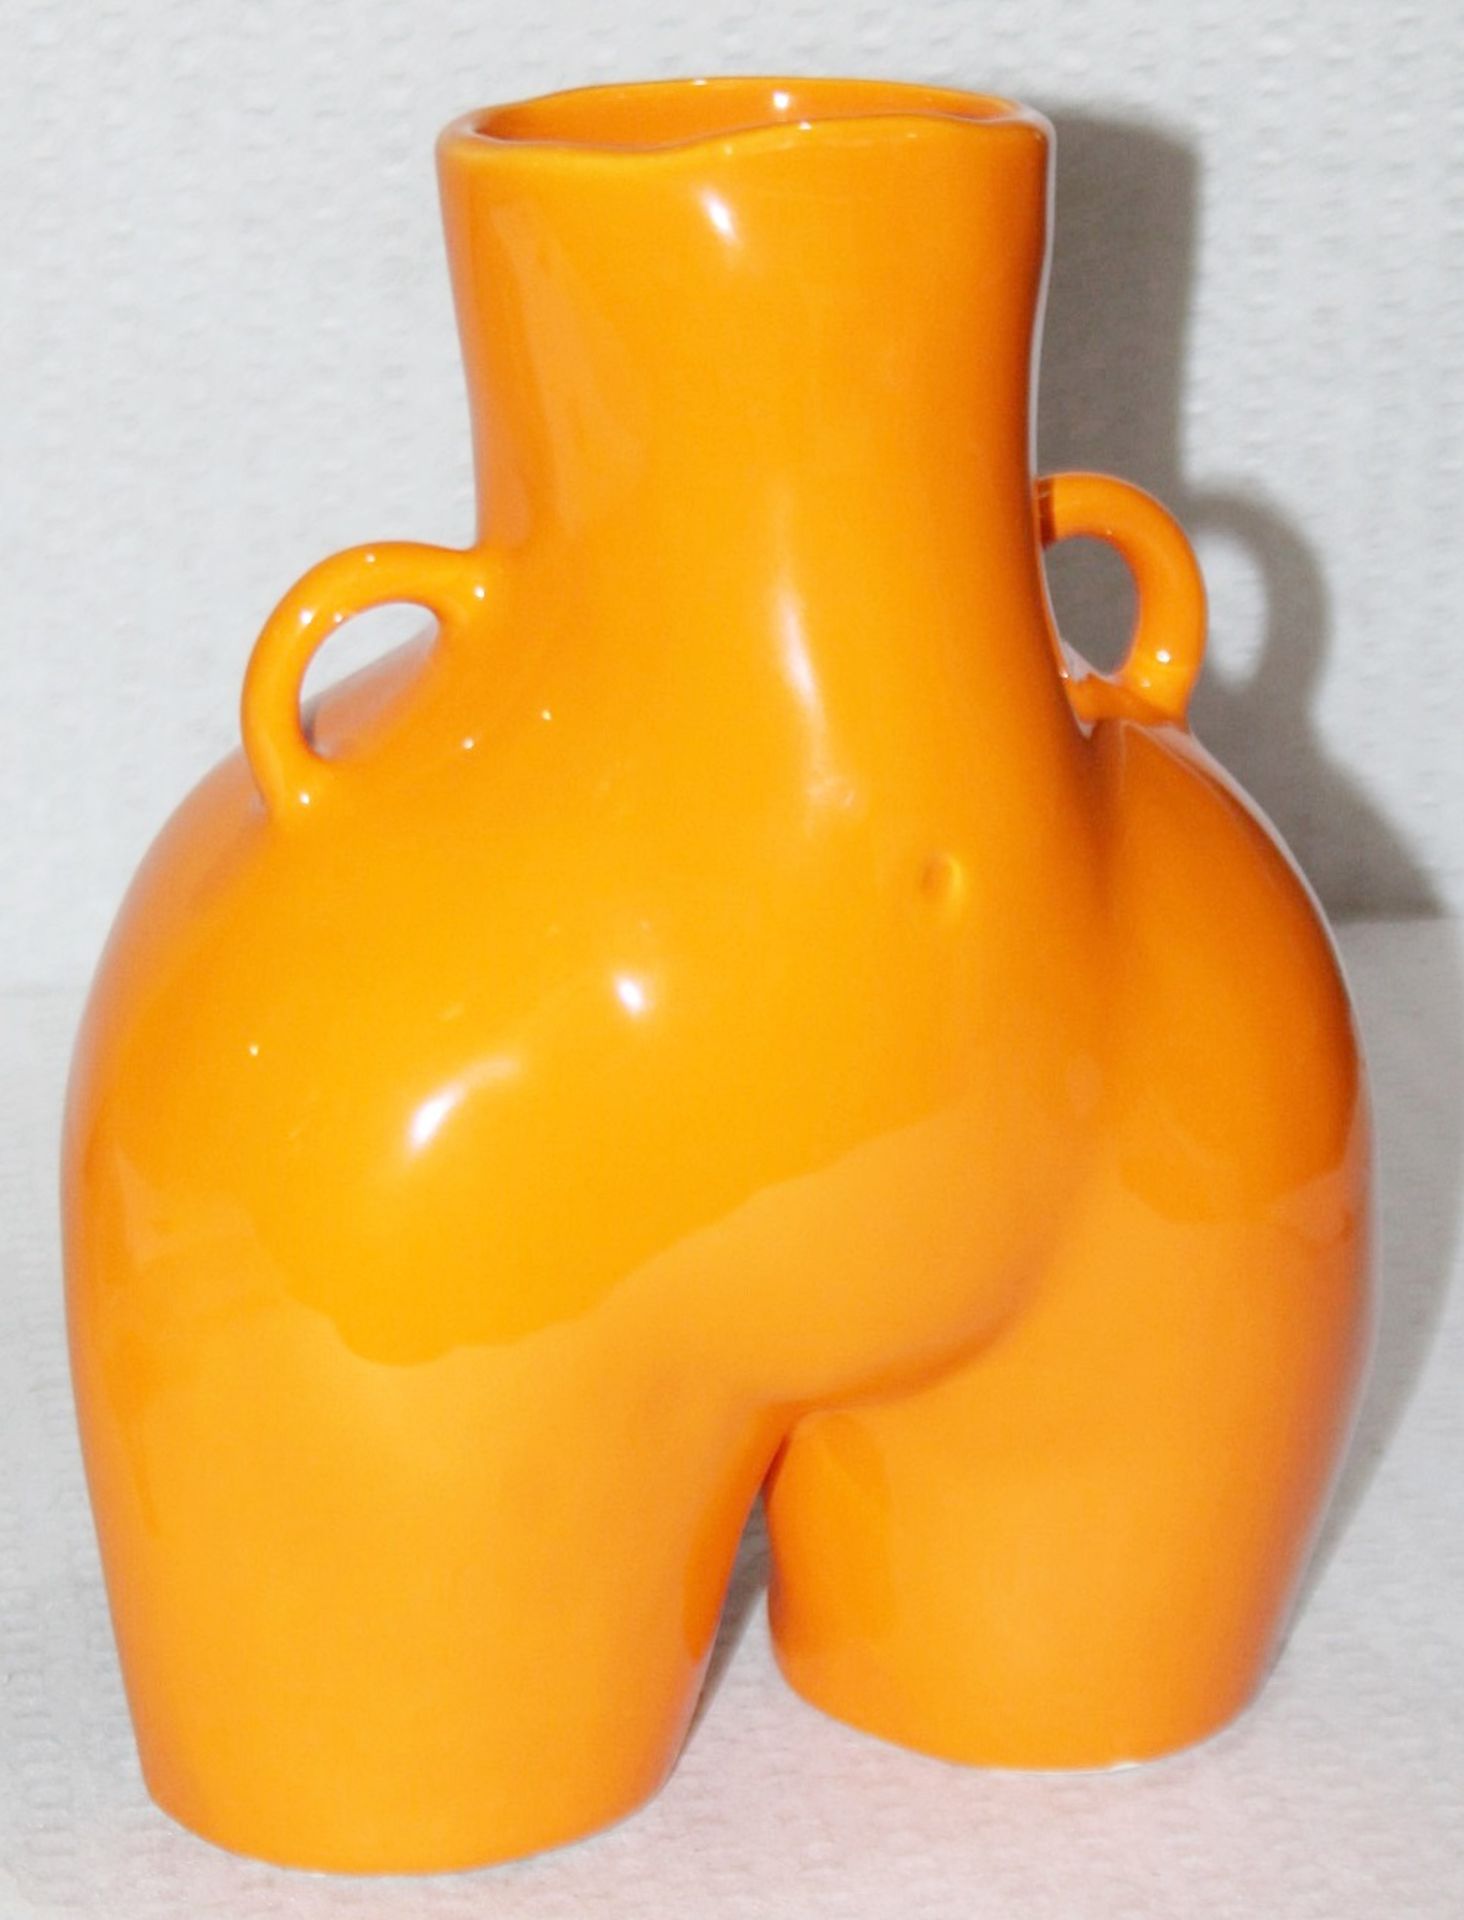 1 x ANISSA KERMICHE 'Love Handles' Designer Decorative Ceramic Vase (31cm) - Original Price £340.00